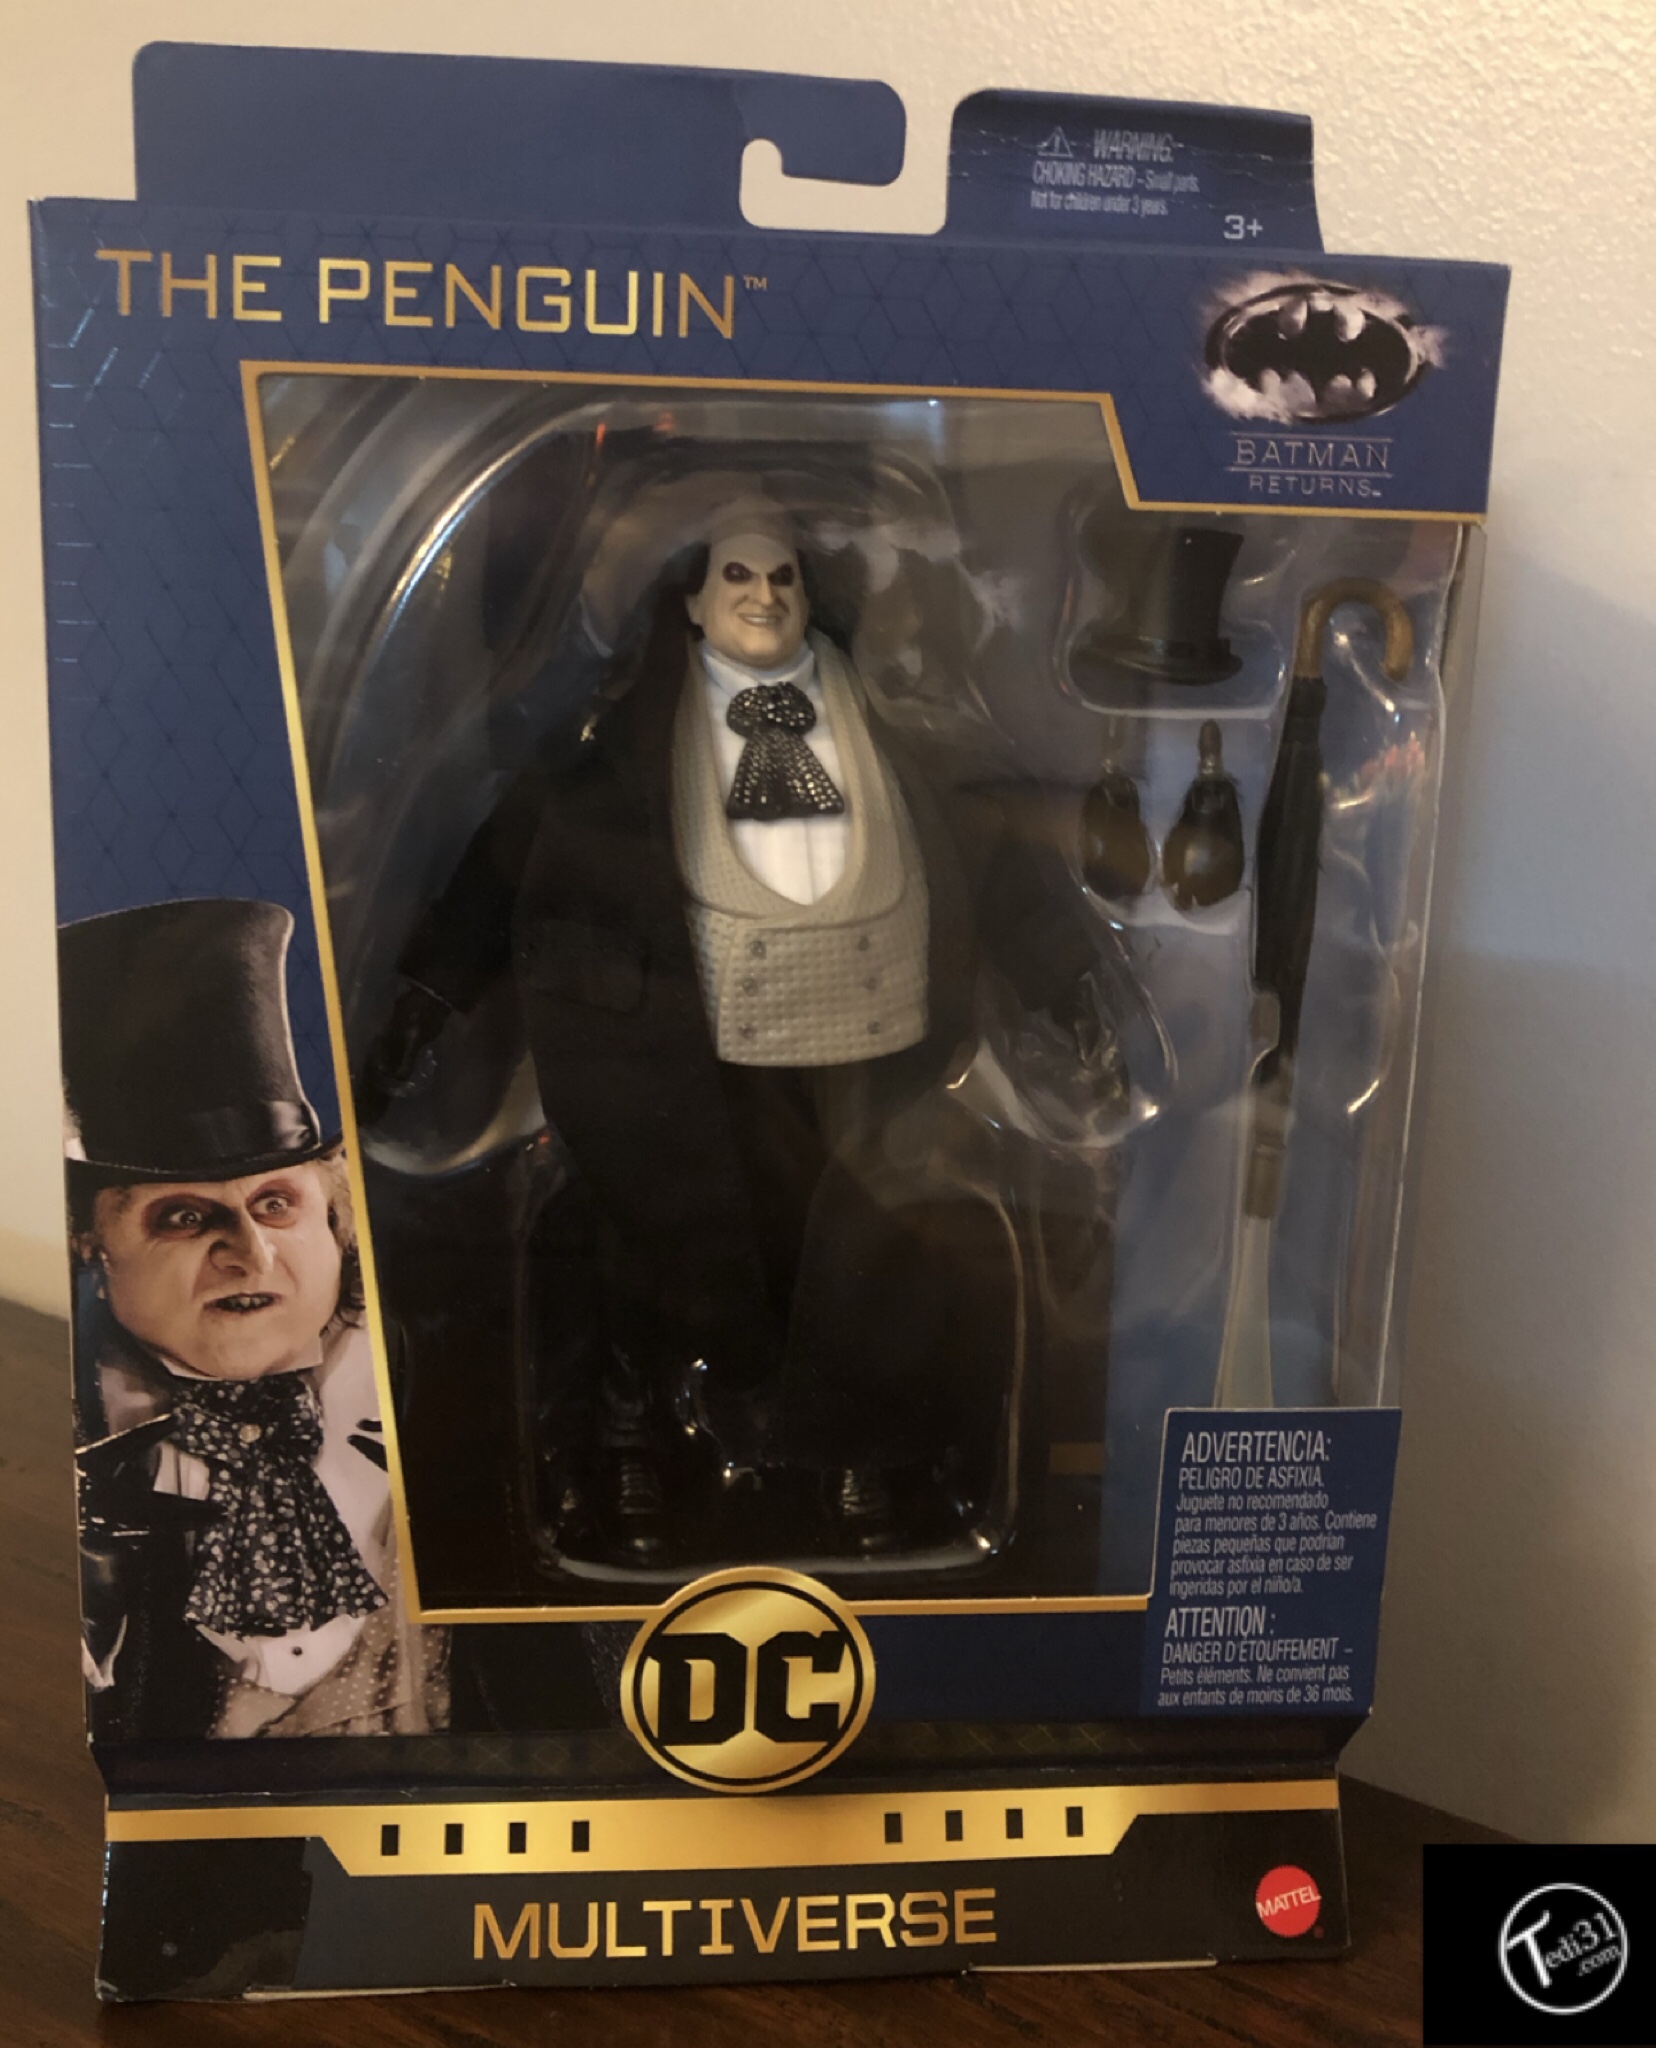 the penguin figure